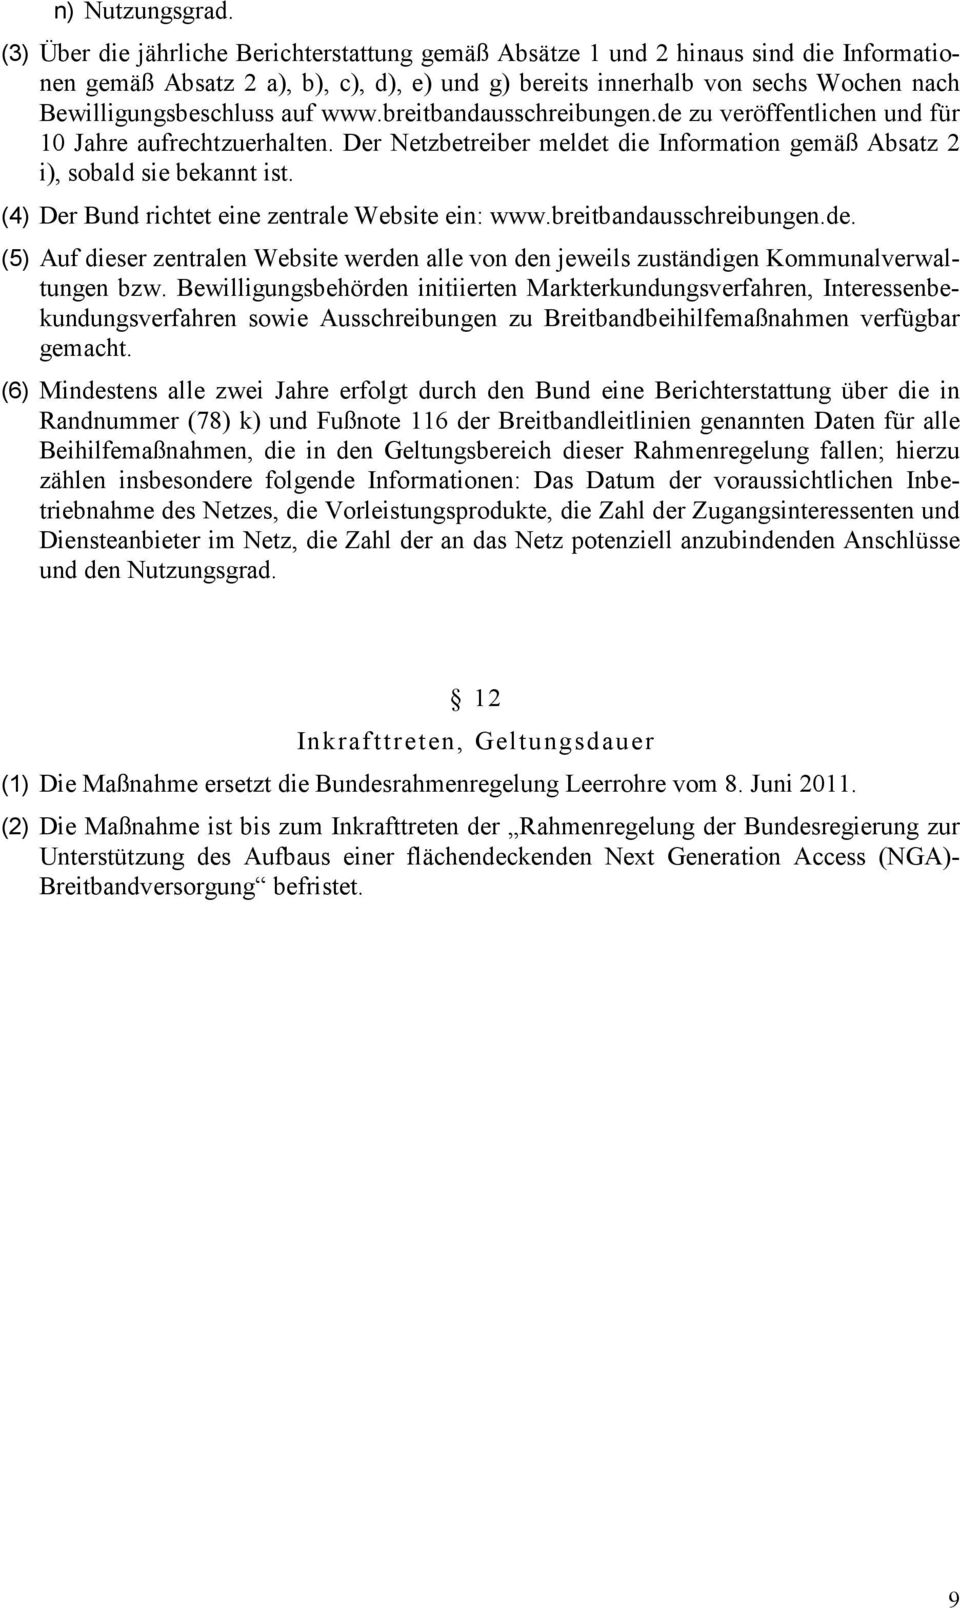 www.breitbandausschreibungen.de zu veröffentlichen und für 10 Jahre aufrechtzuerhalten. Der Netzbetreiber meldet die Information gemäß Absatz 2 i), sobald sie bekannt ist.